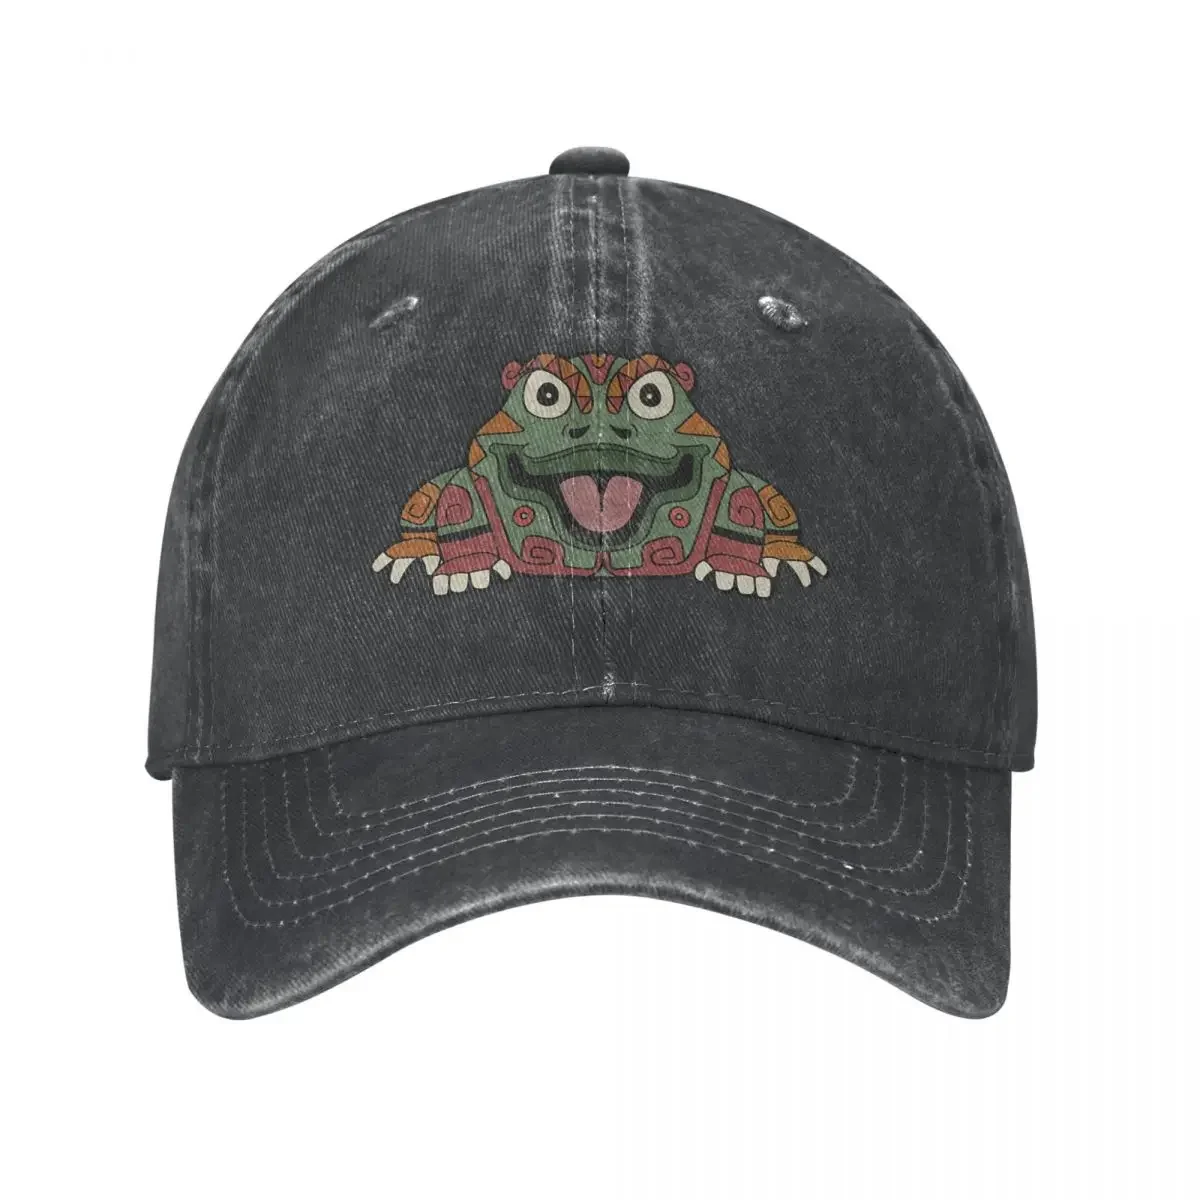 

Aztec Frog Mayan Inca Toltec Baseball Cap cowboy hat Peaked cap Cowboy Bebop Hats Men and women hats